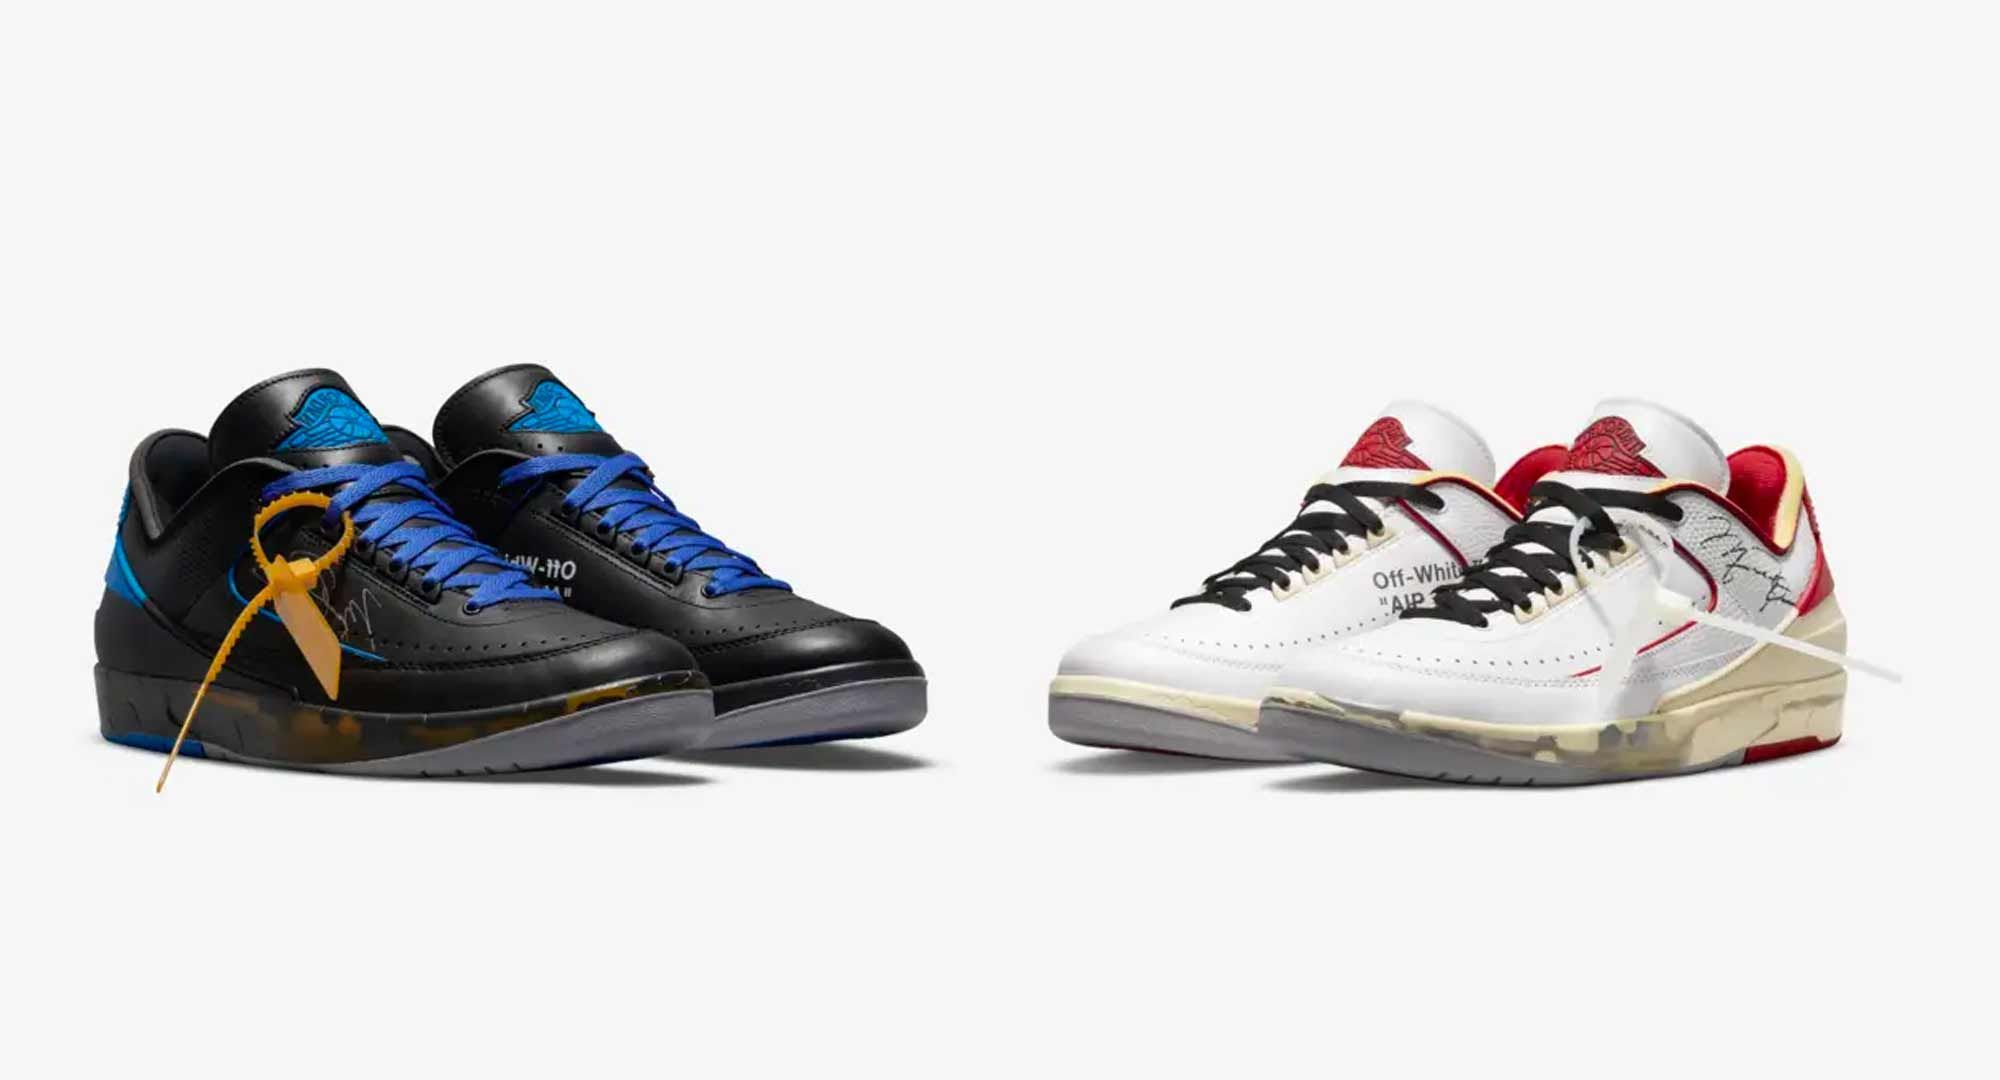 Amplía tu colección Nike x Off-White con estas Air Jordan رؤوس